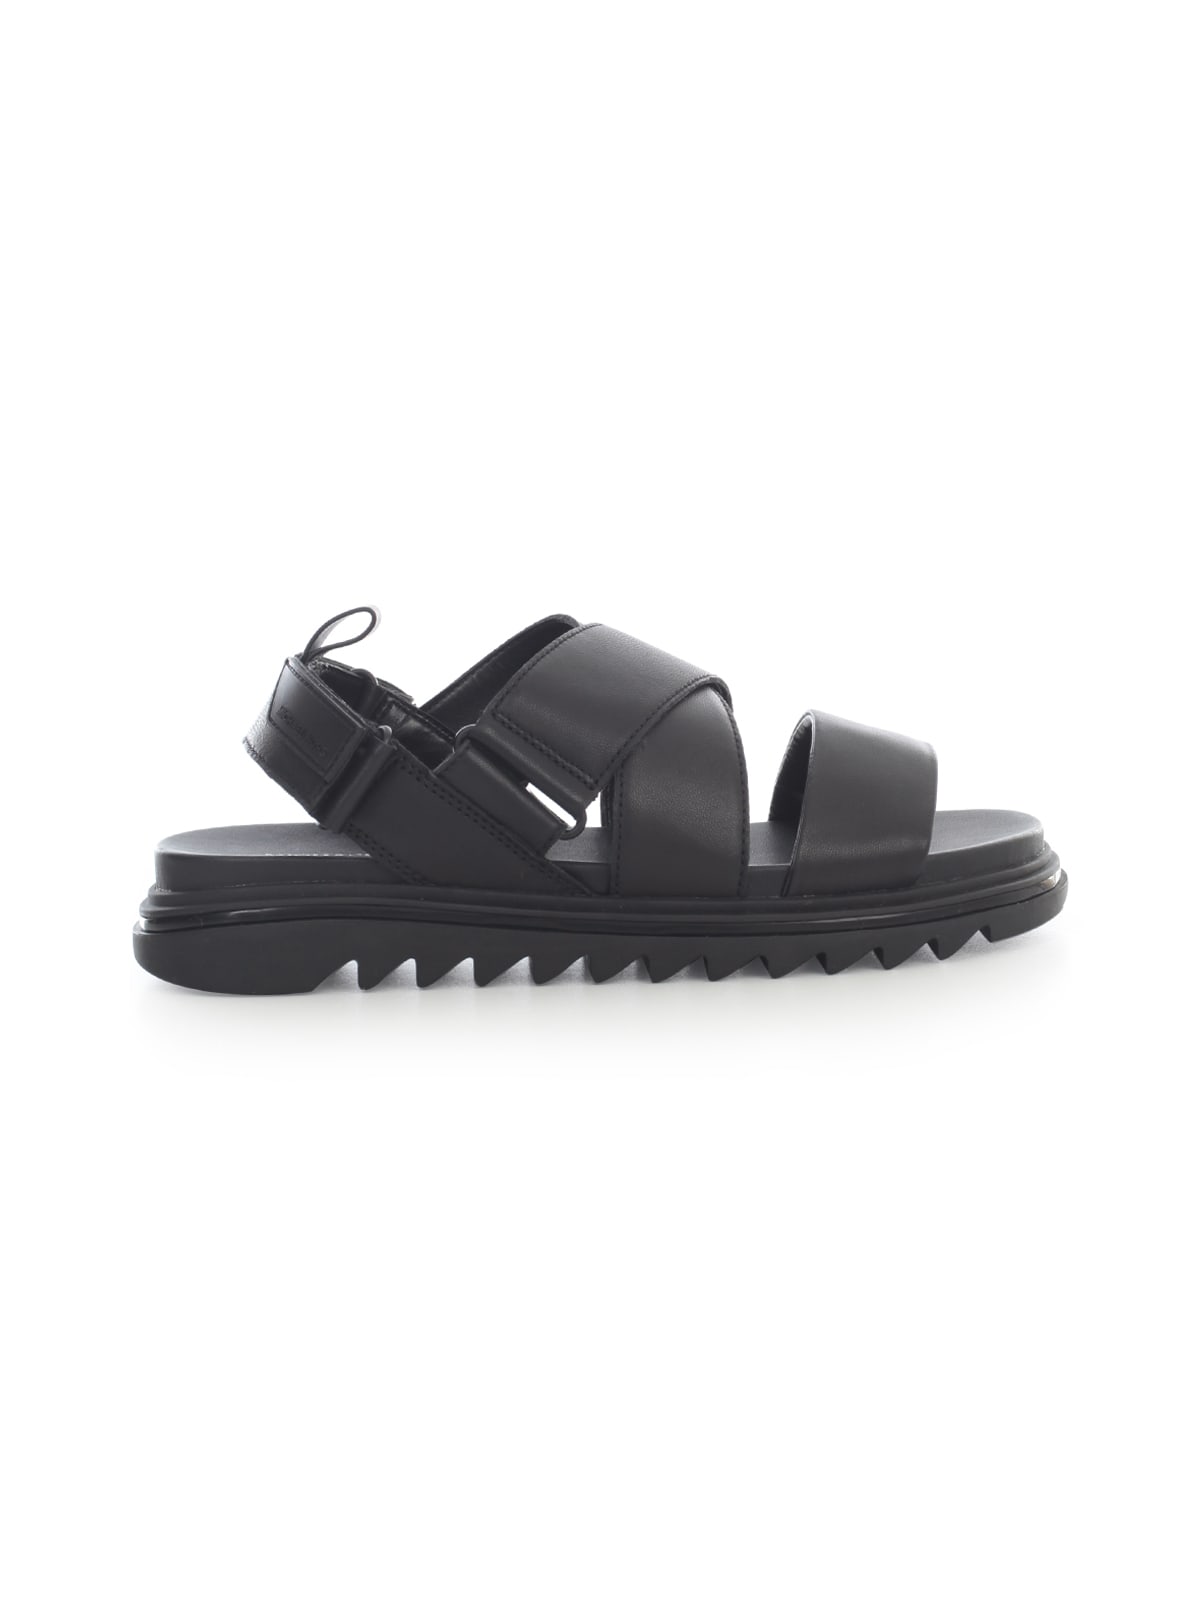 Michael Kors Damon Slide Sandals